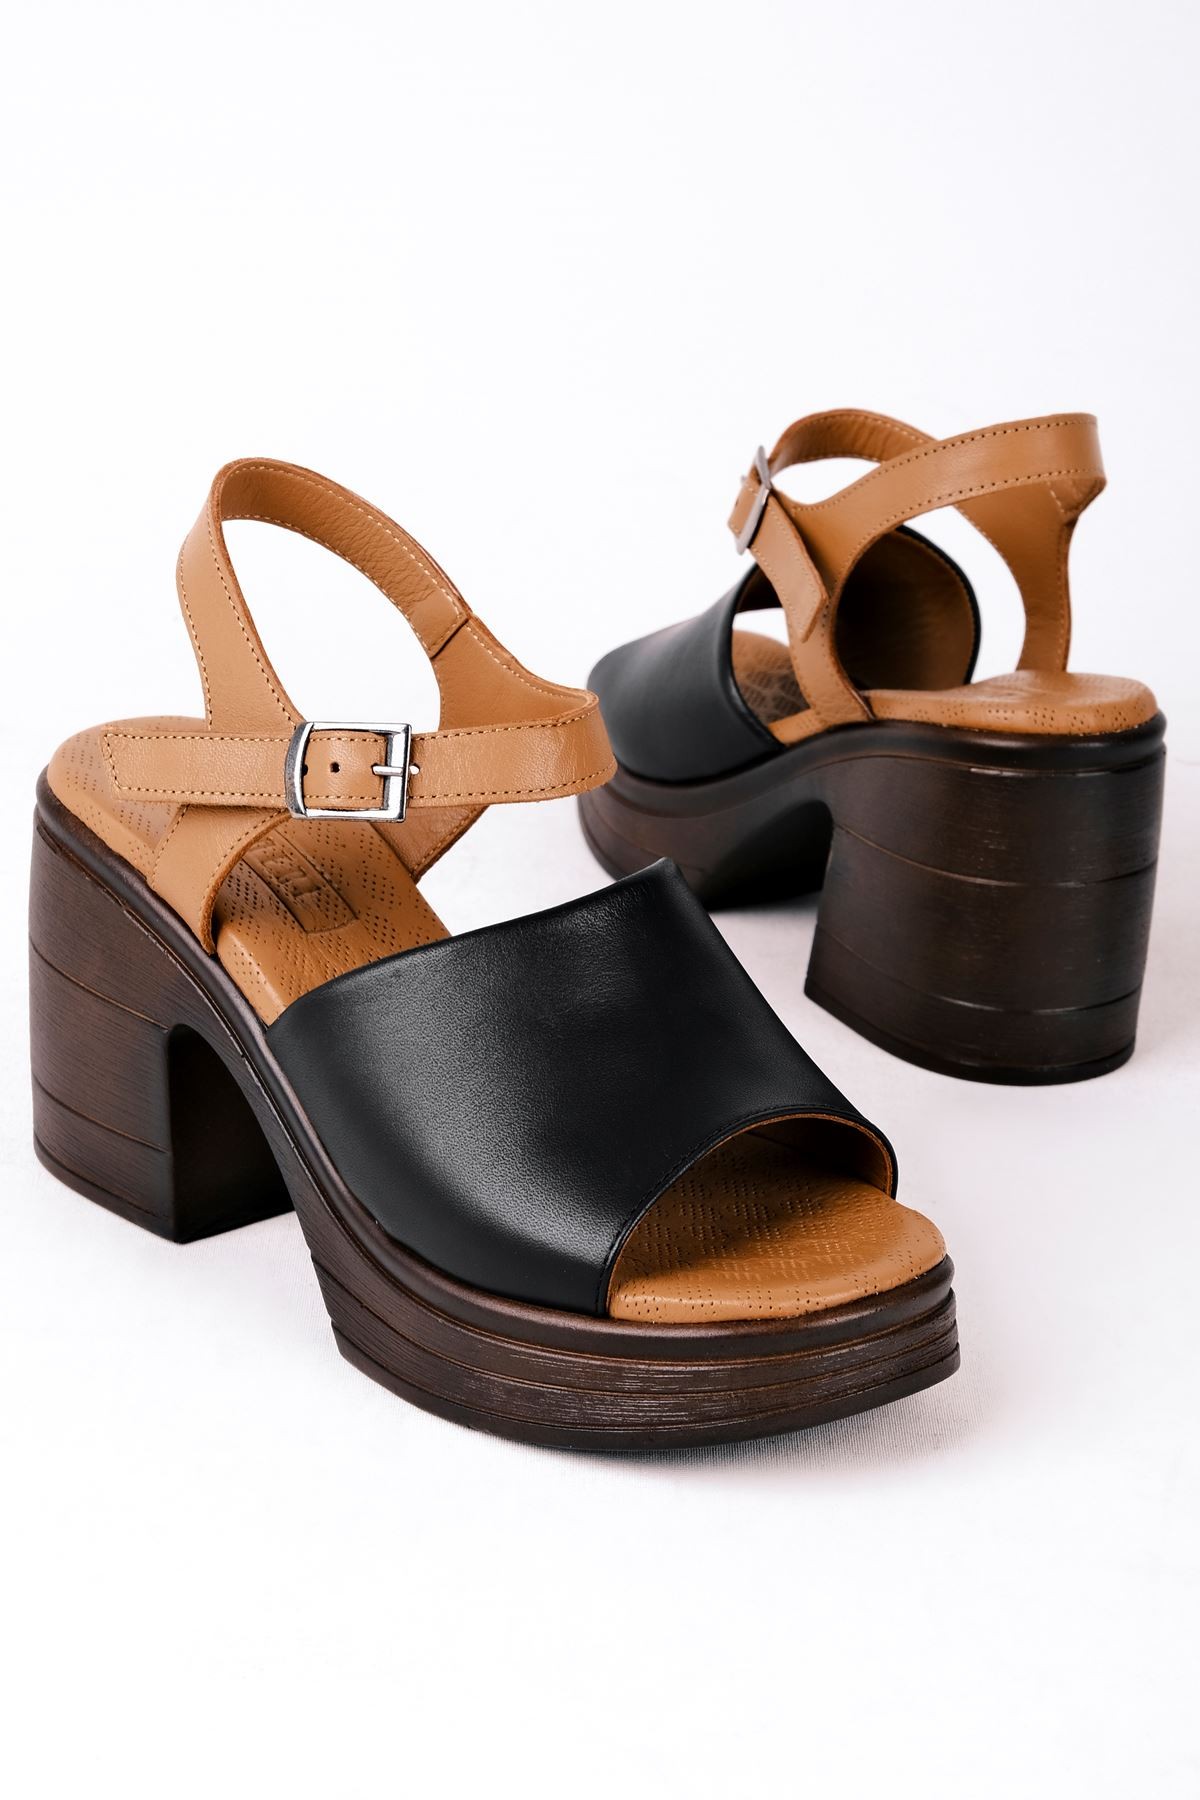 Raggy Kadın Hakiki Deri Tek Bantlı Topuklu Sandalet (B3116) - Siyah